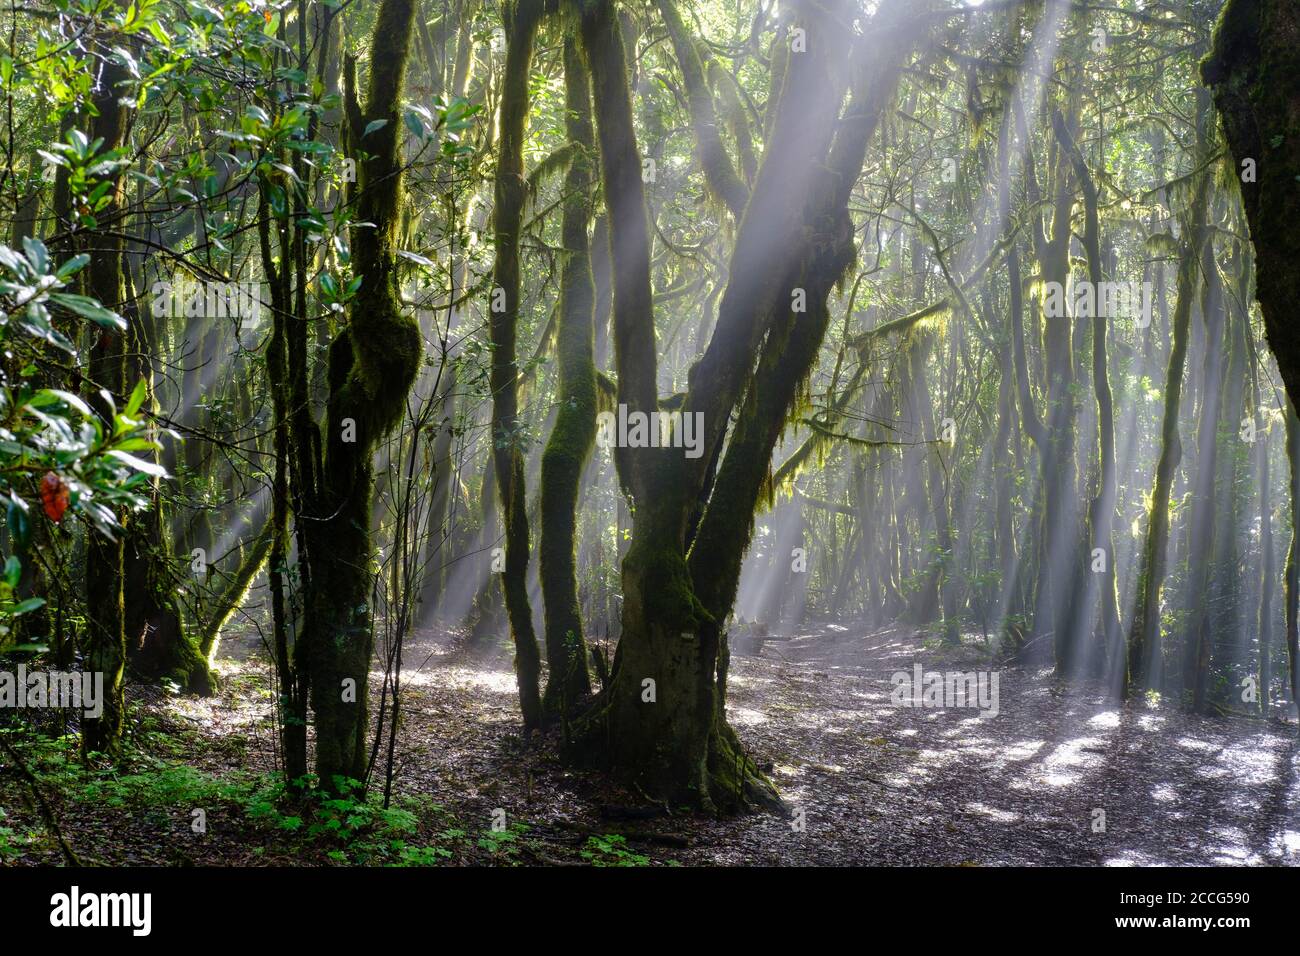 Rayons de soleil dans le brouillard, chemin forestier dans la forêt nuageuse, parc national de Garajonay, la Gomera, îles Canaries, Espagne Banque D'Images